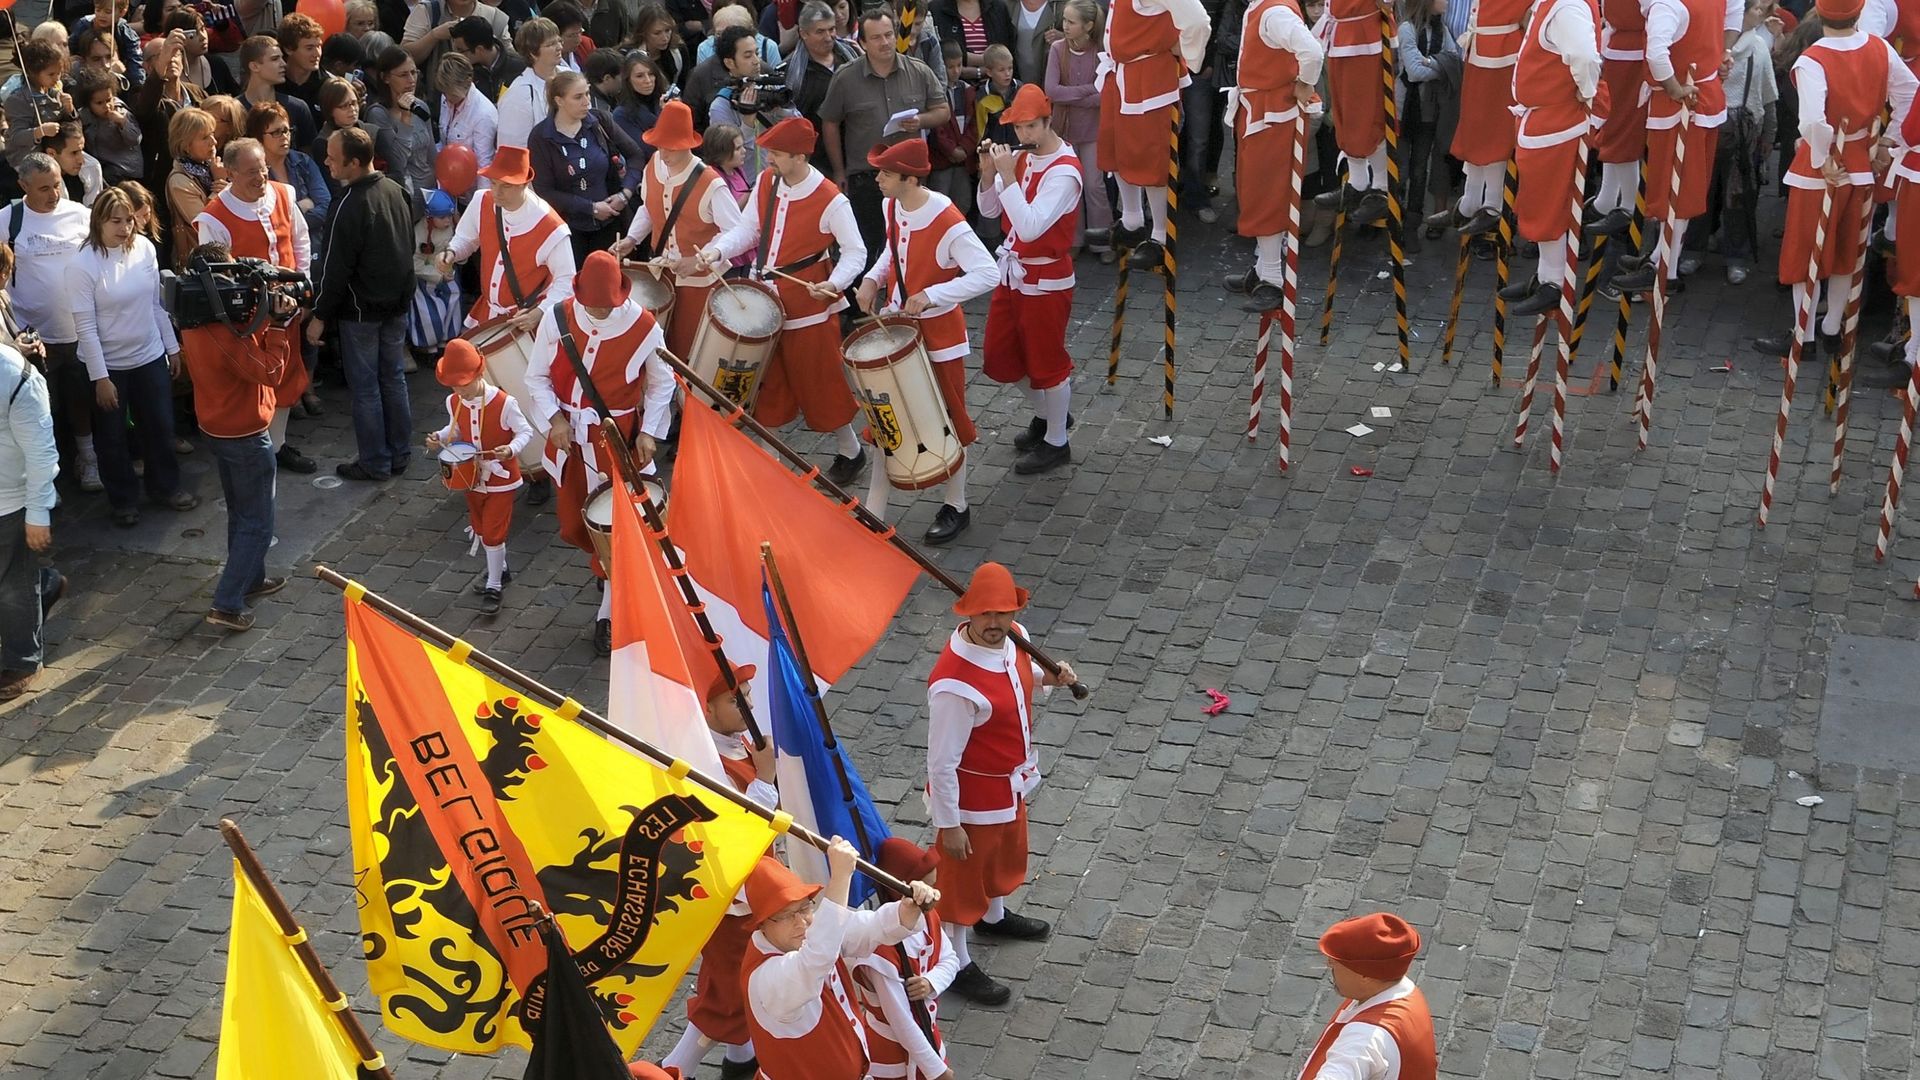 Les joutes d'échasses de Namur ont fêté leur 600e anniversaire en 2011